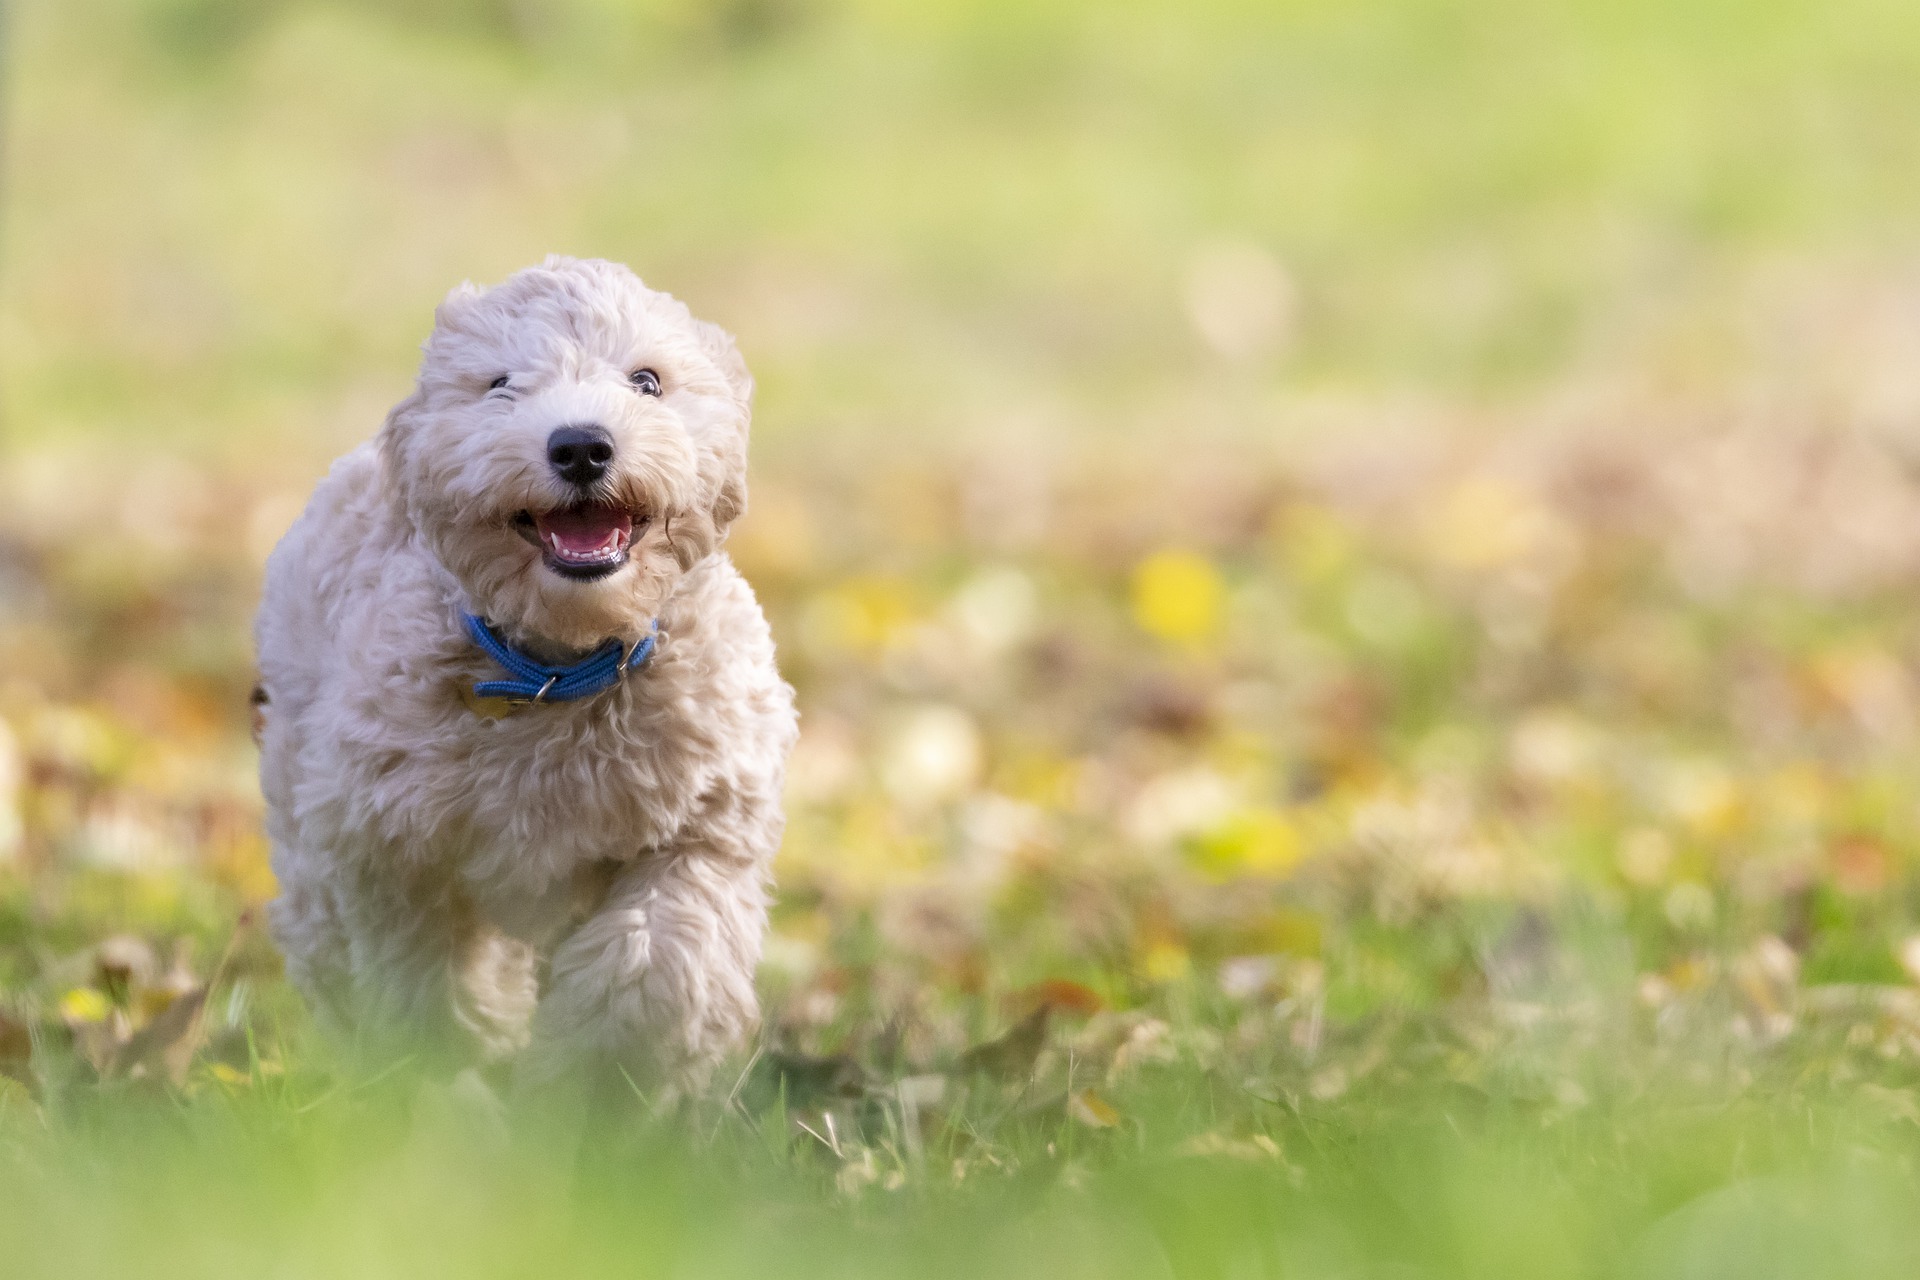 puppy running through a field